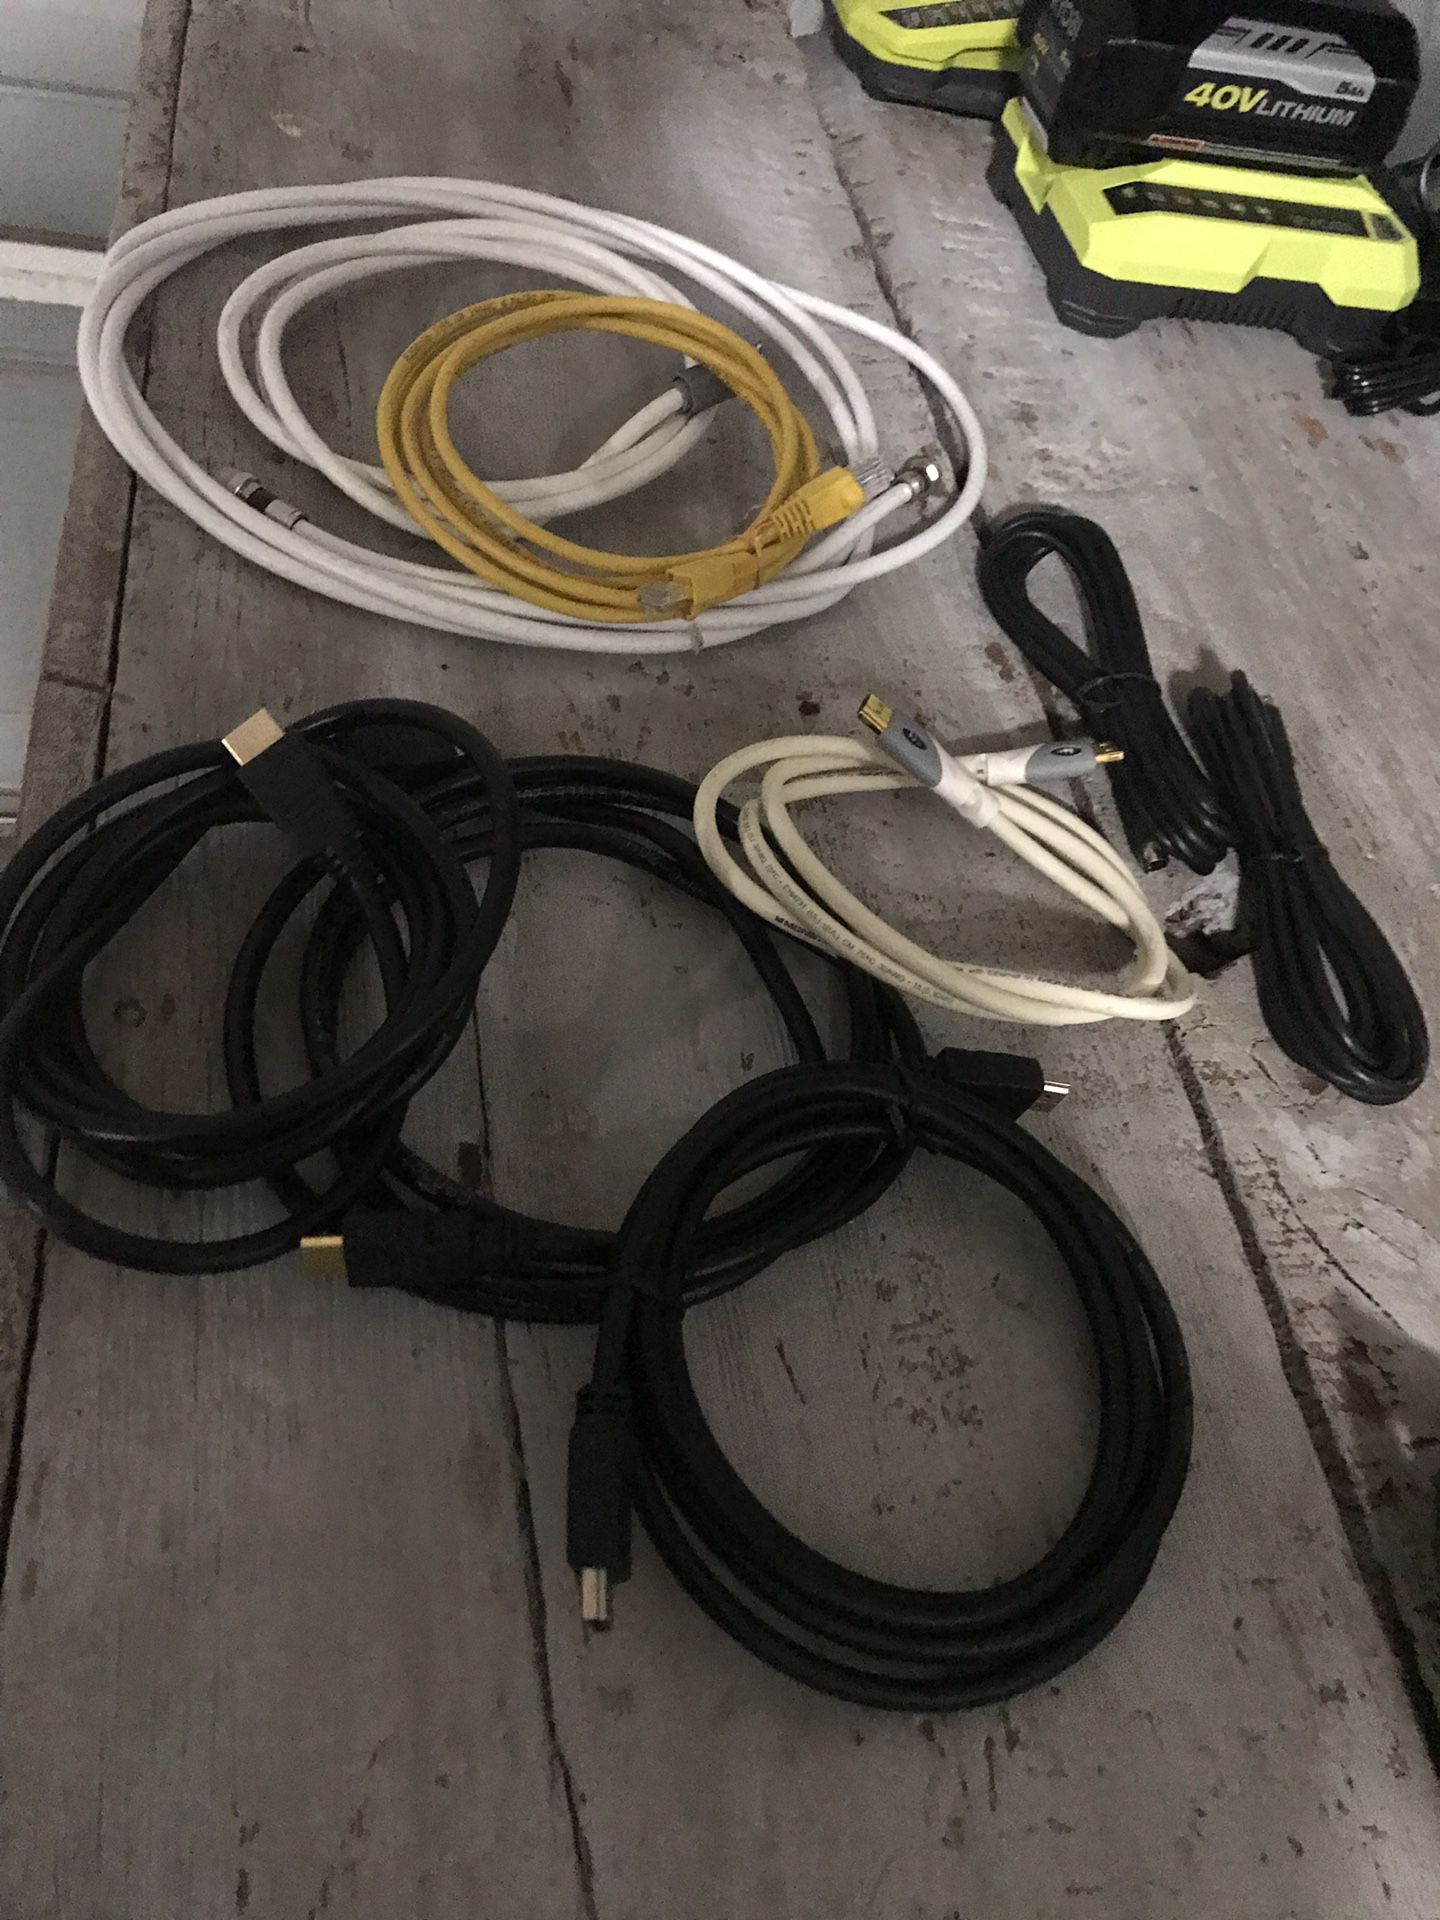 HDMI /coaxial Cables